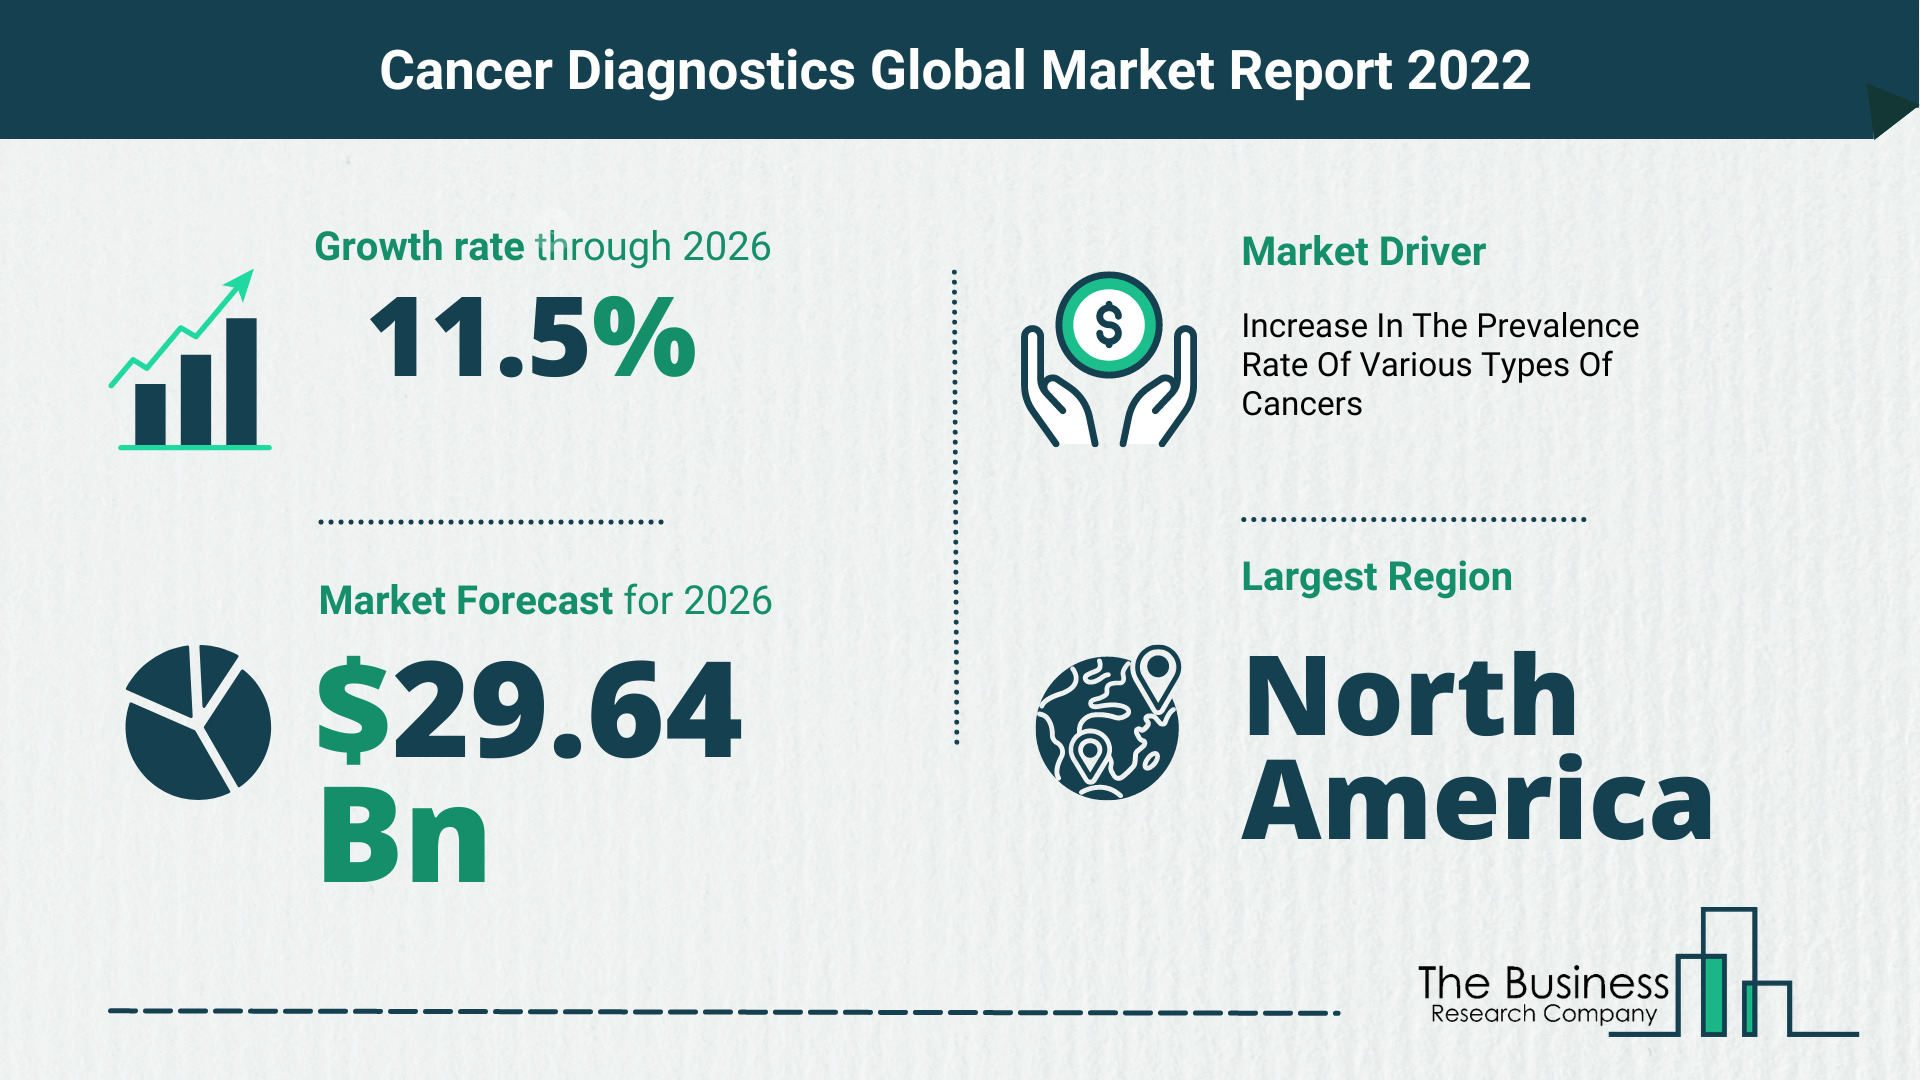 Global Cancer Diagnostics Market